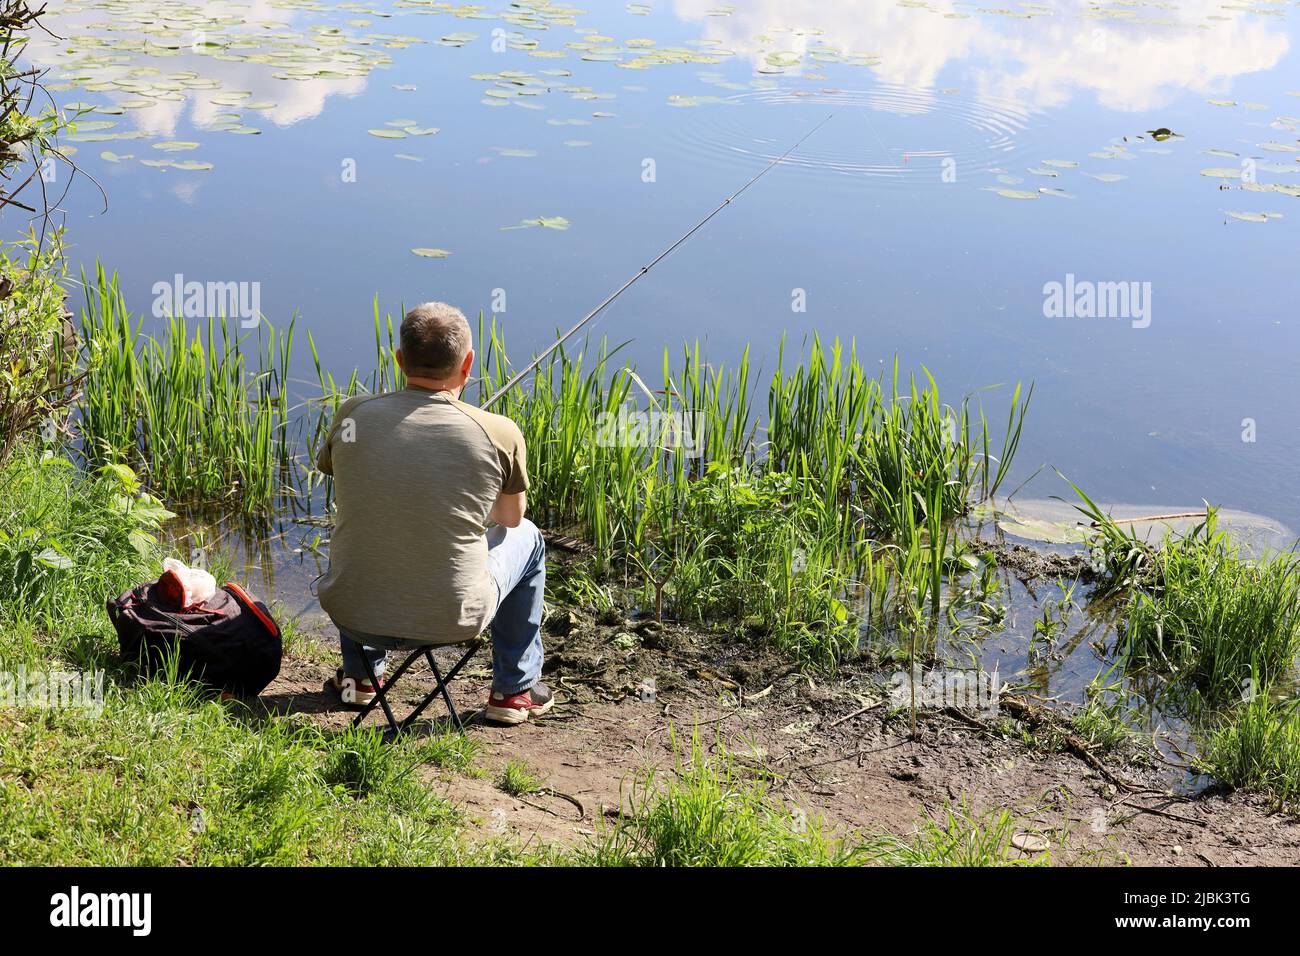 Pêcheur assis près de l'eau avec une canne à pêche, vue arrière. Homme qui pêche sur la côte du lac en été Banque D'Images